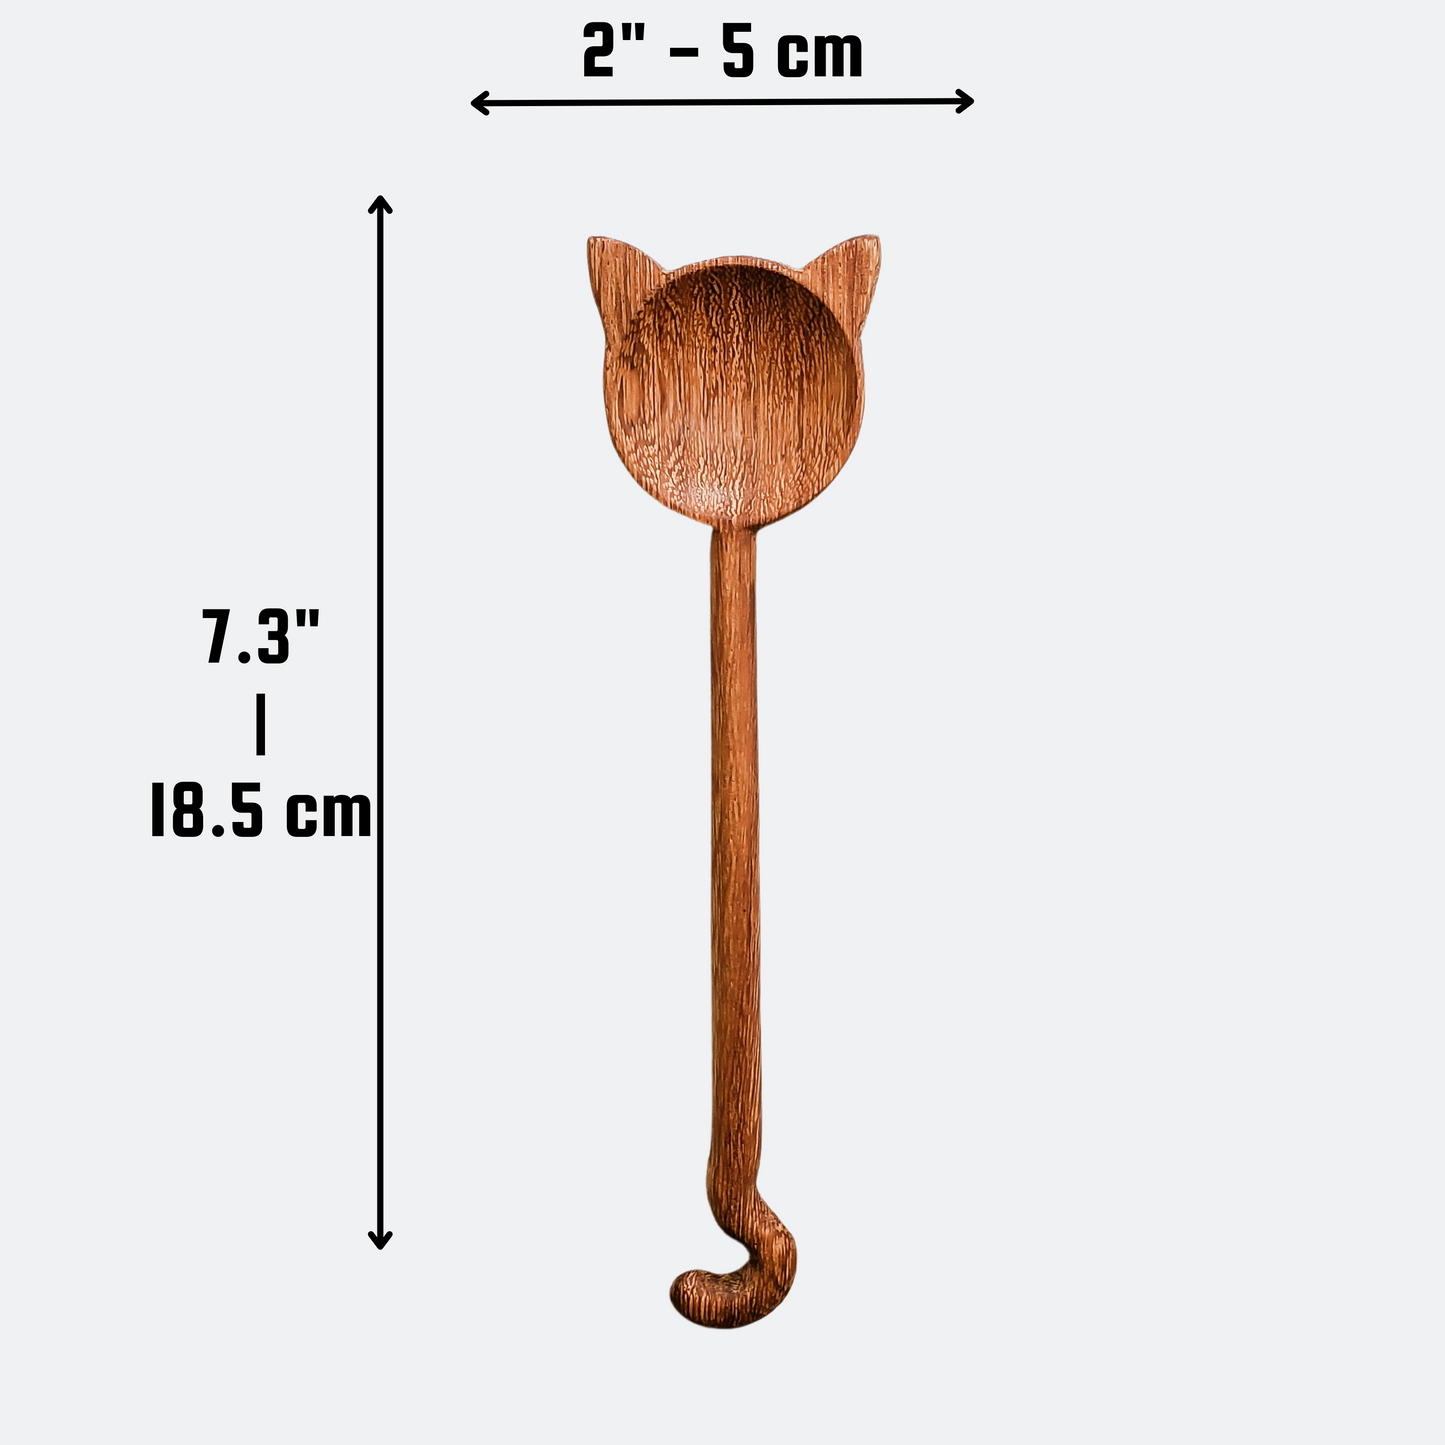 Hand-Carved Cat Design Wood Stirring Spoon - Kitchen Utensils